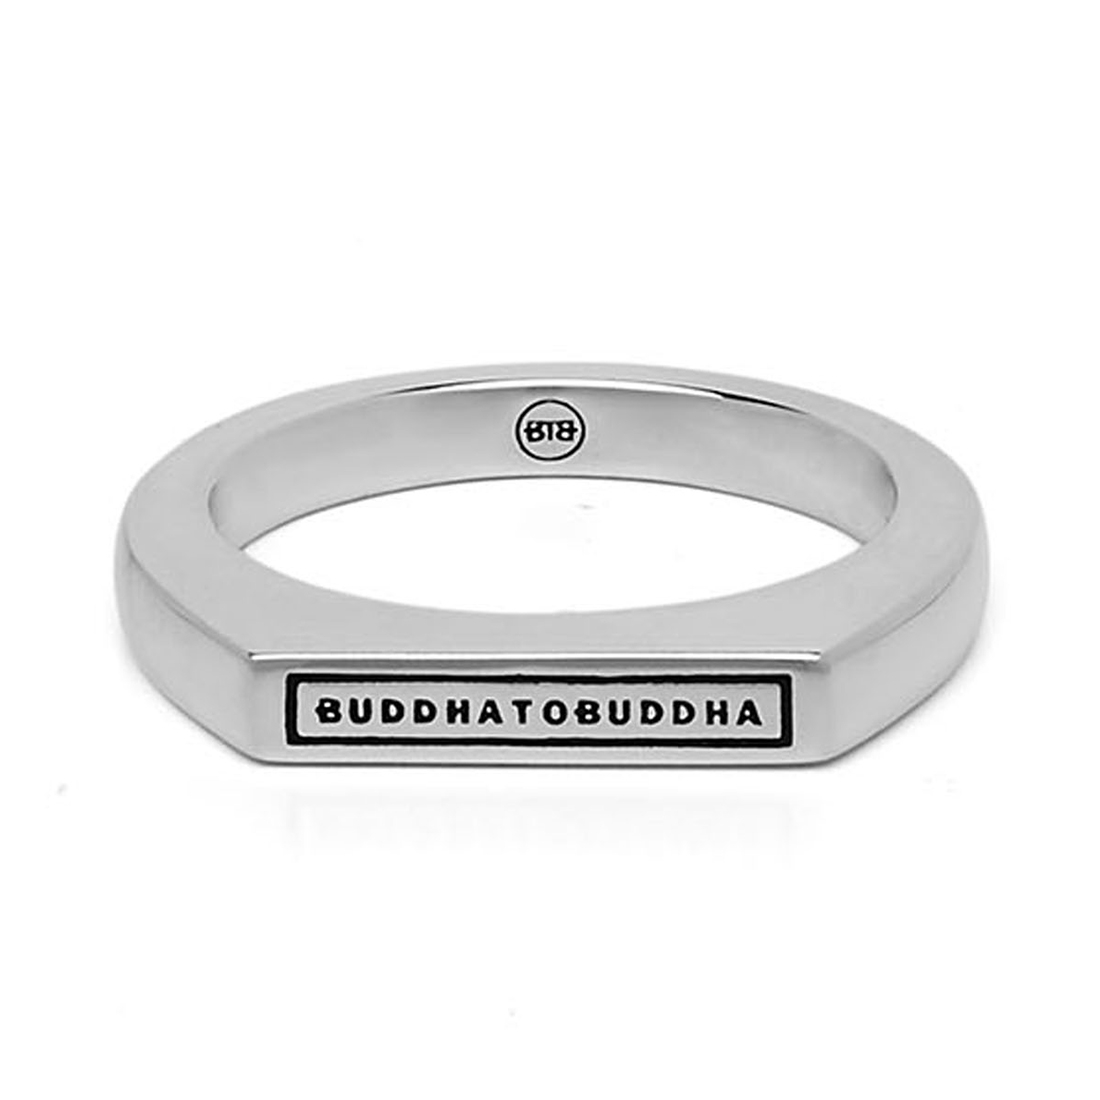 Buddha to buddha tangguh signet logo ring